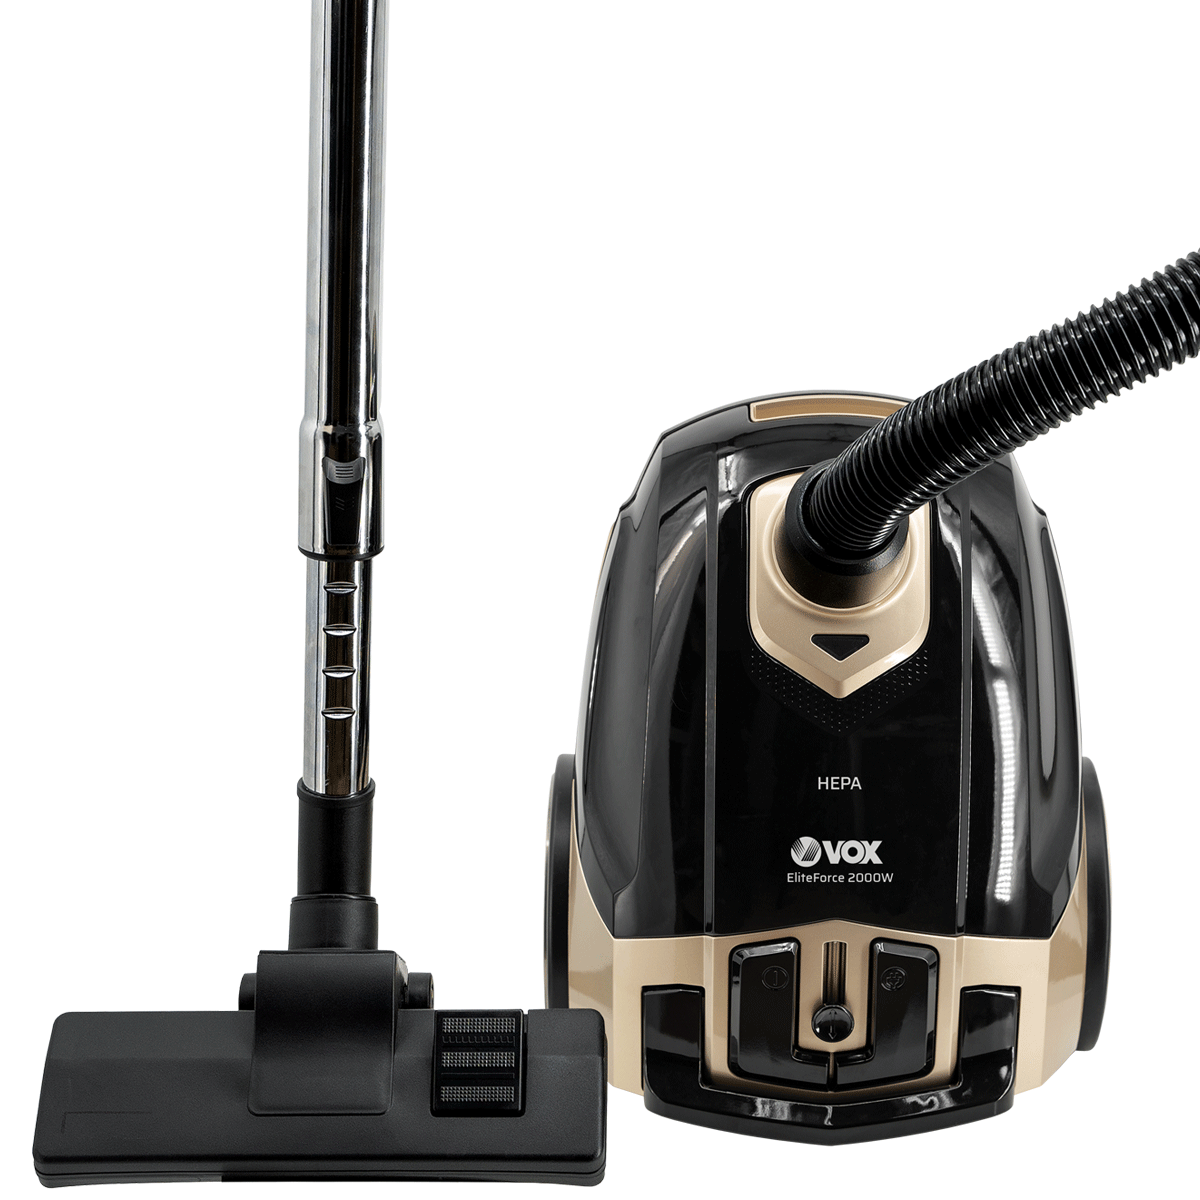 Vacuum cleaner SL 819 